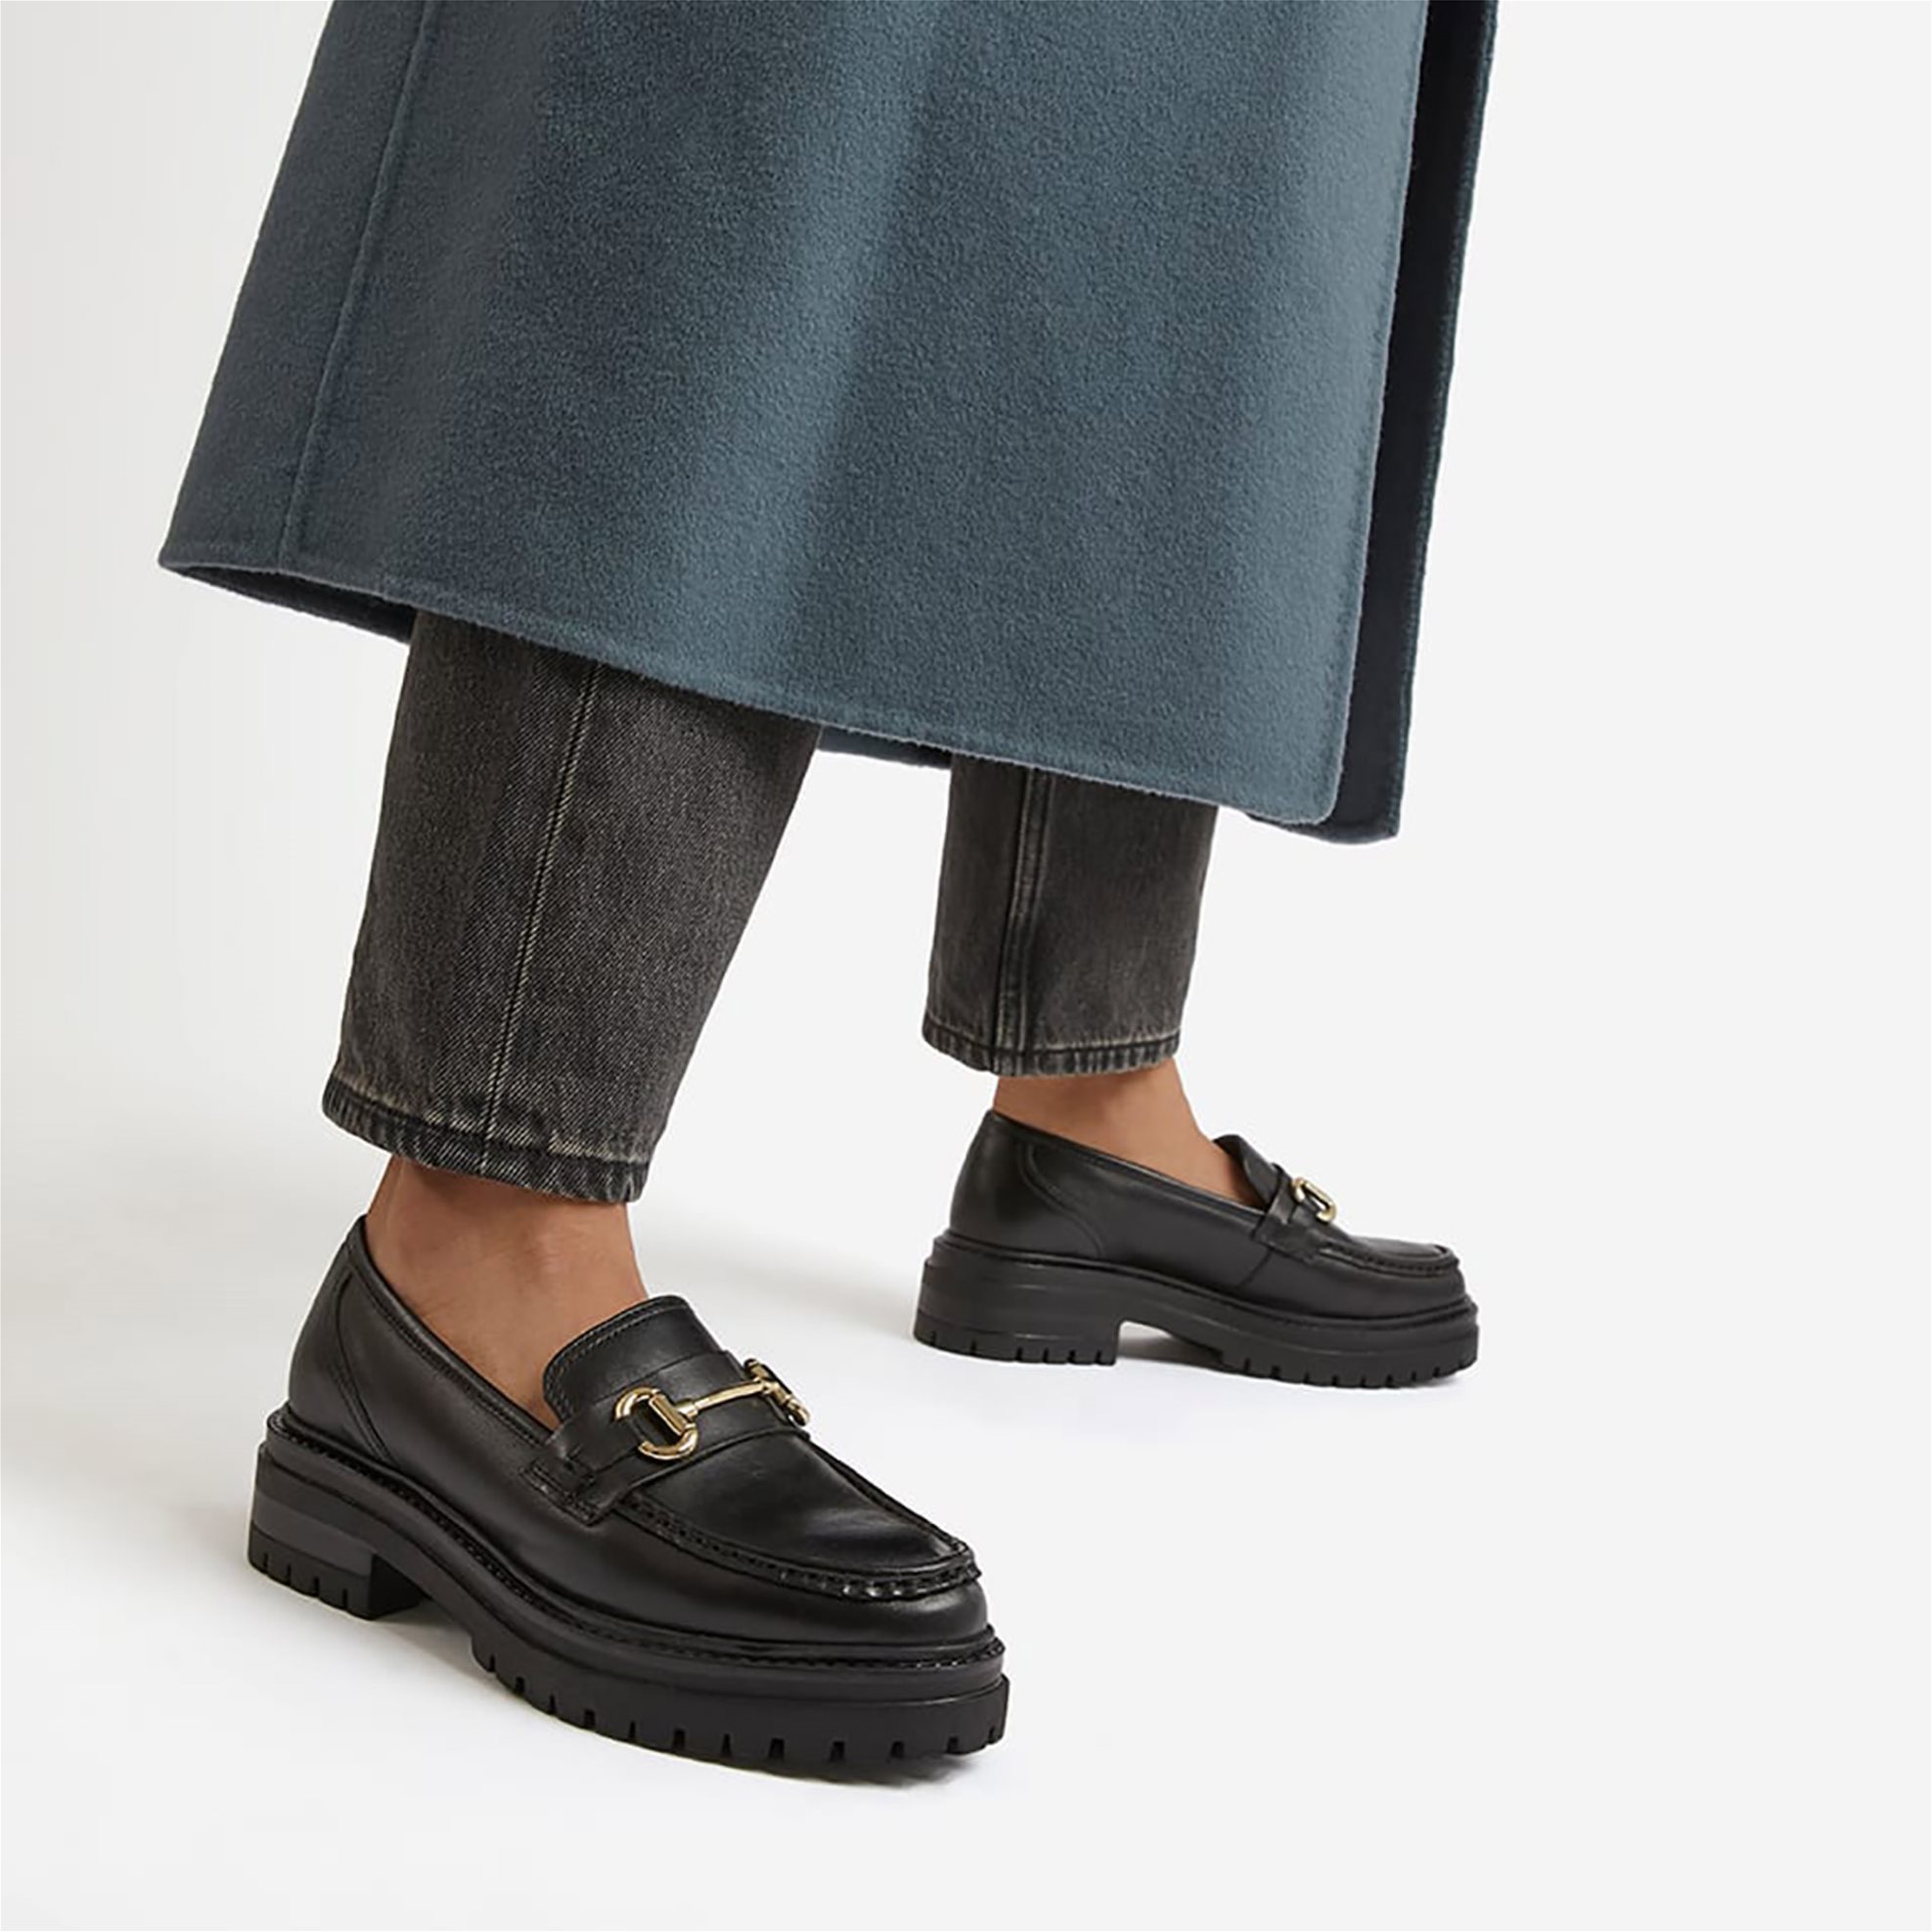 Συνδύασε τα loafers, τη διαχρονική βάση των παπουτσιών, με 4 τρόπους για ultra trendy εμφανίσεις